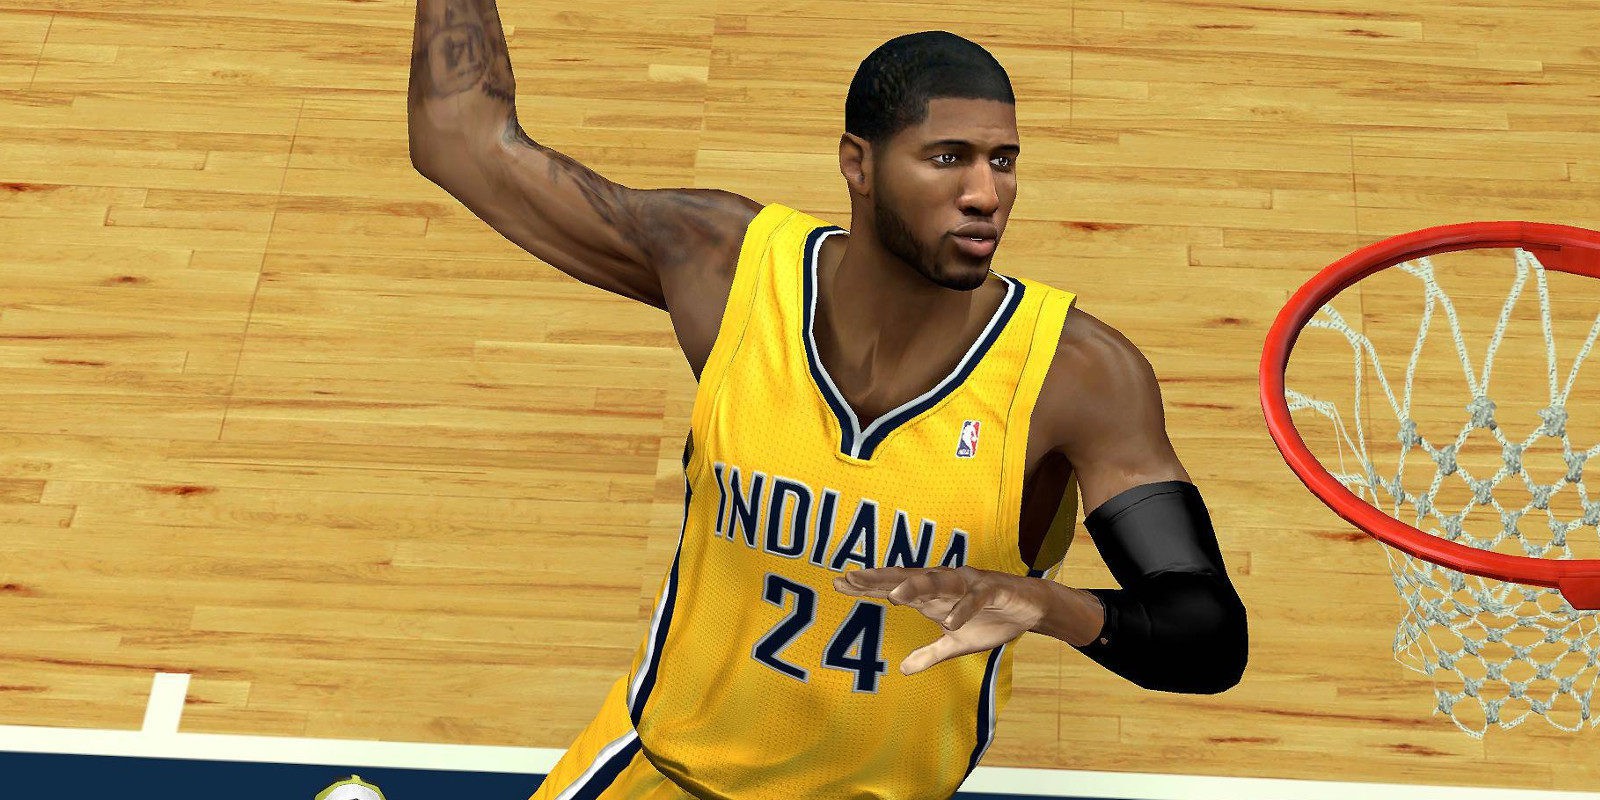 Paul George, de los Indiana Pacers, protagoniza la portada de 'NBA 2K17'